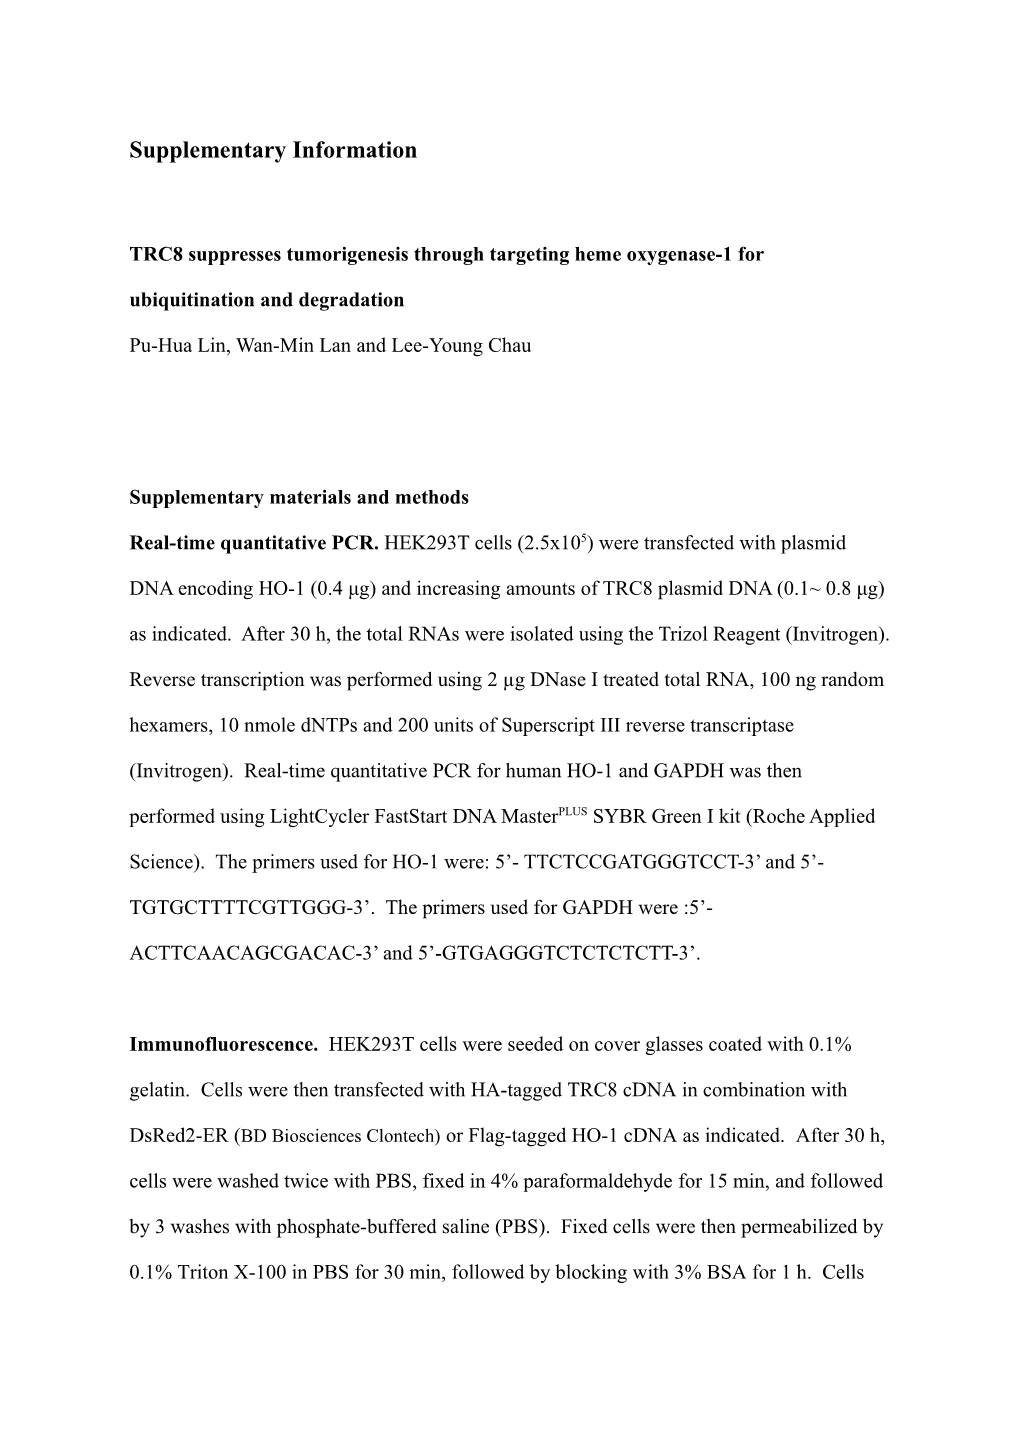 TRC8 Suppresses Tumorigenesis Through Targeting Heme Oxygenase-1 for Ubiquitination And